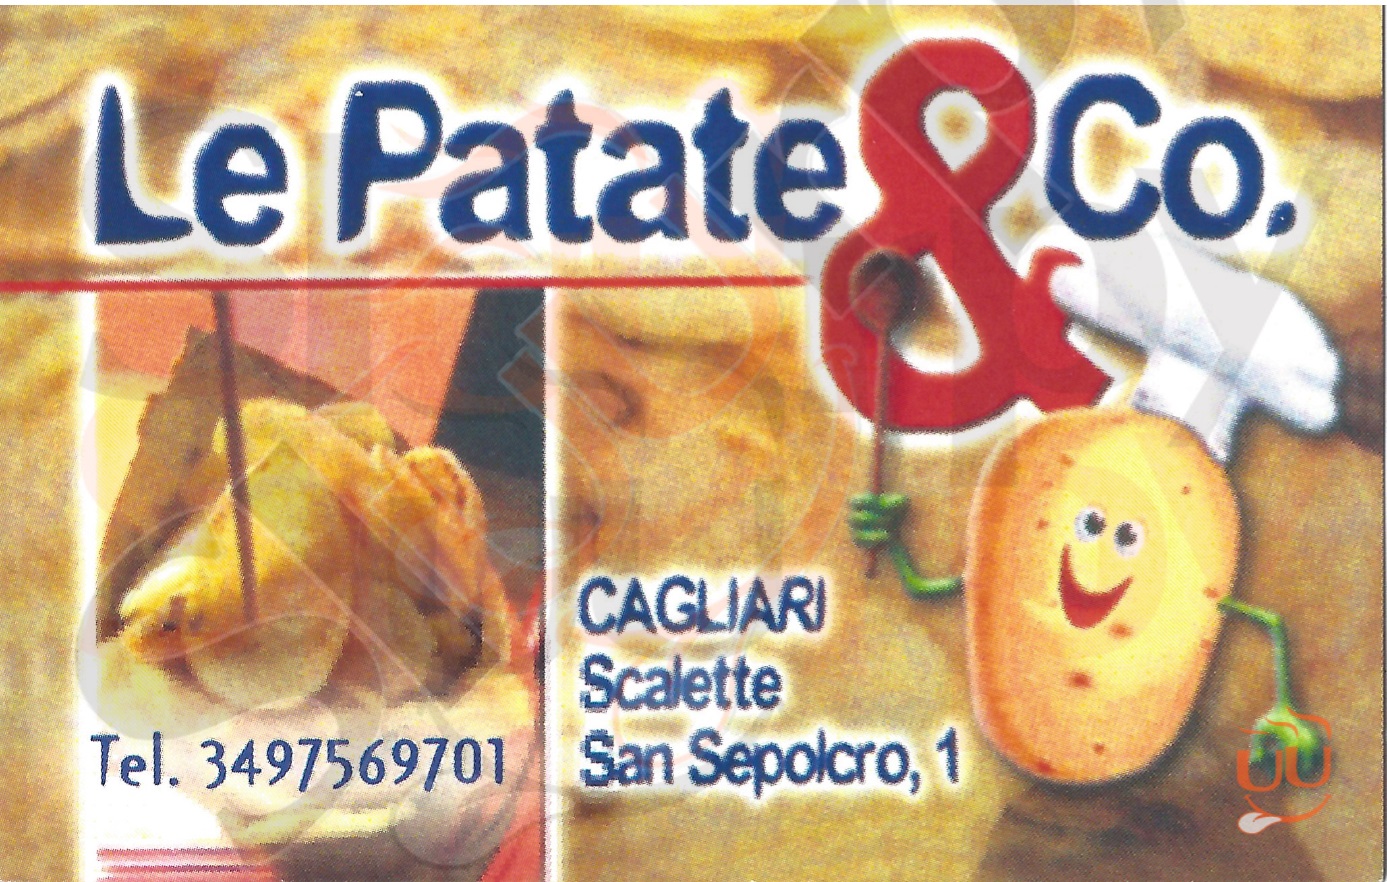 LE PATATE & CO. Cagliari menù 1 pagina